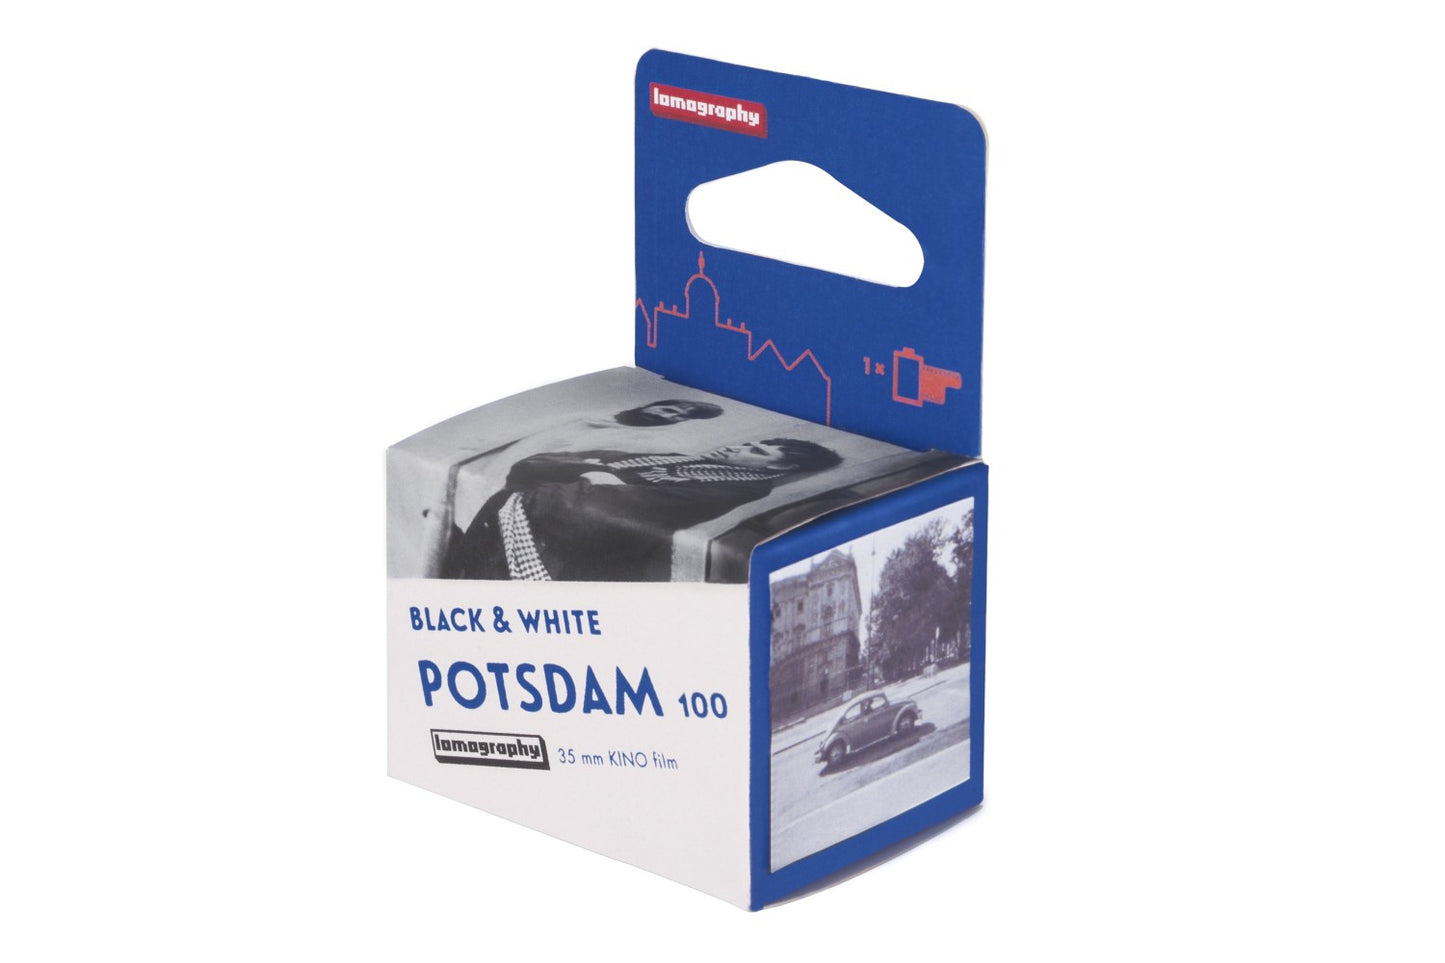 Potsdam Kino N&B 35mm ISO 100